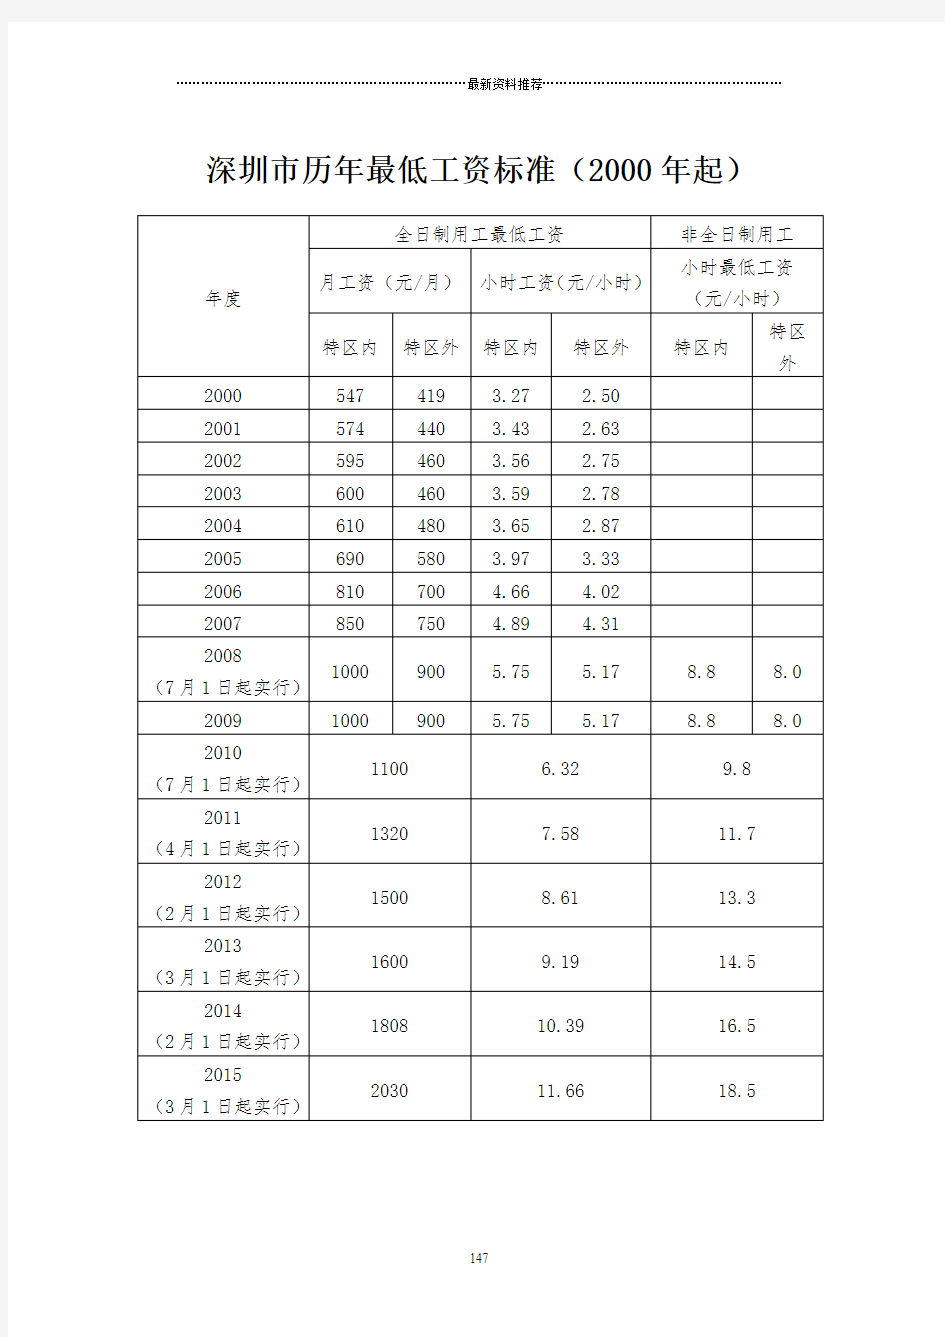 深圳市历年职工平均工资(2000年起)精编版